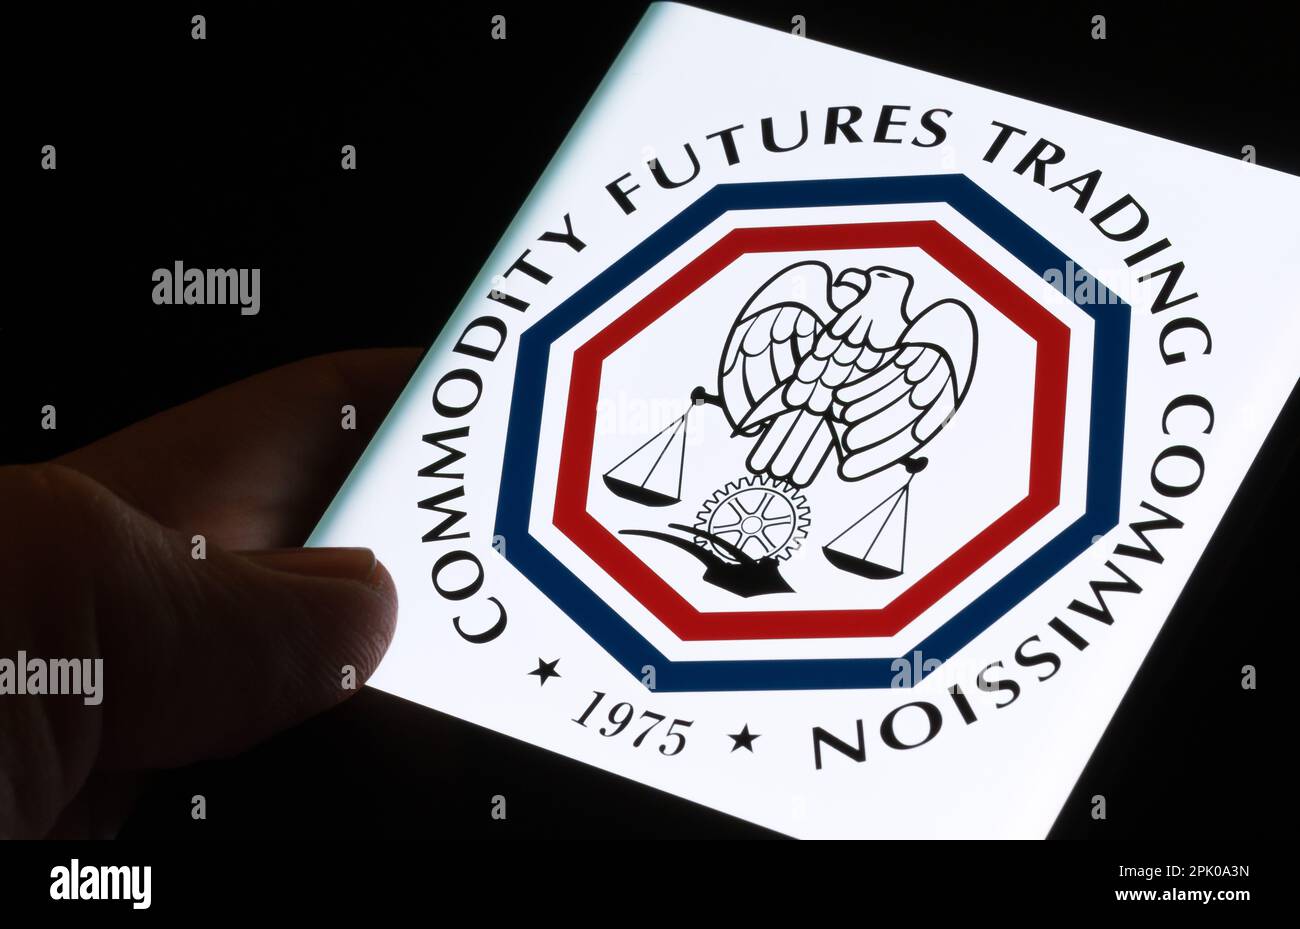 CFTC-Logo der Commodity Futures Trading Commission auf dem Bildschirm des Smartphones, das im Dunkeln in den Händen gehalten wird. Stafford, Großbritannien, 3. April 2023. Stockfoto